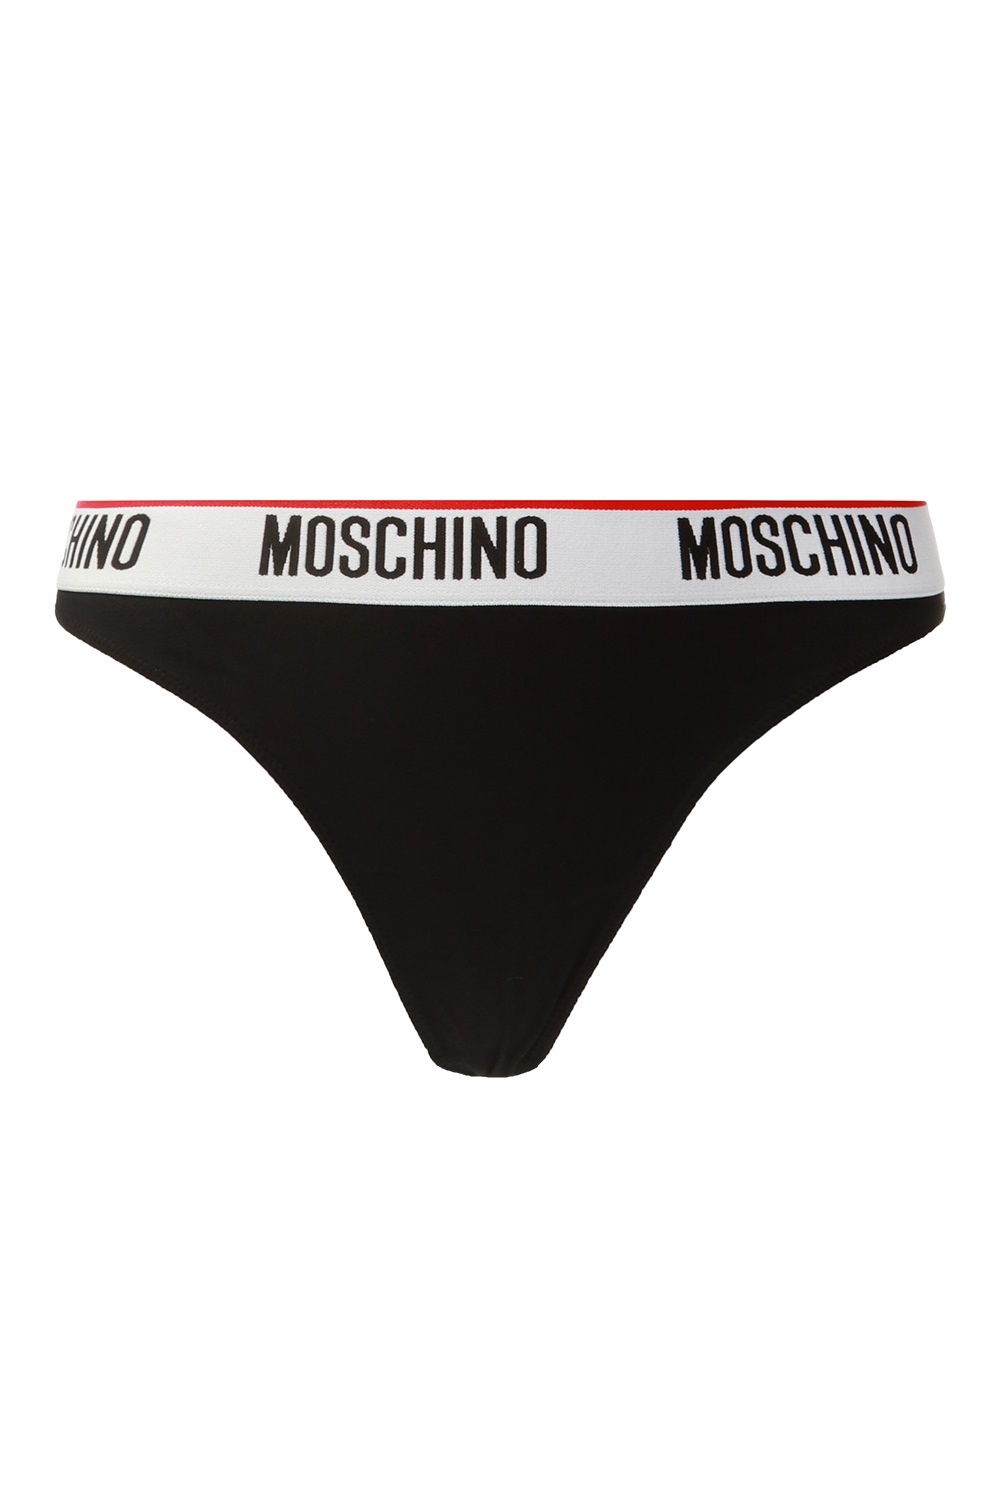 moschino thong